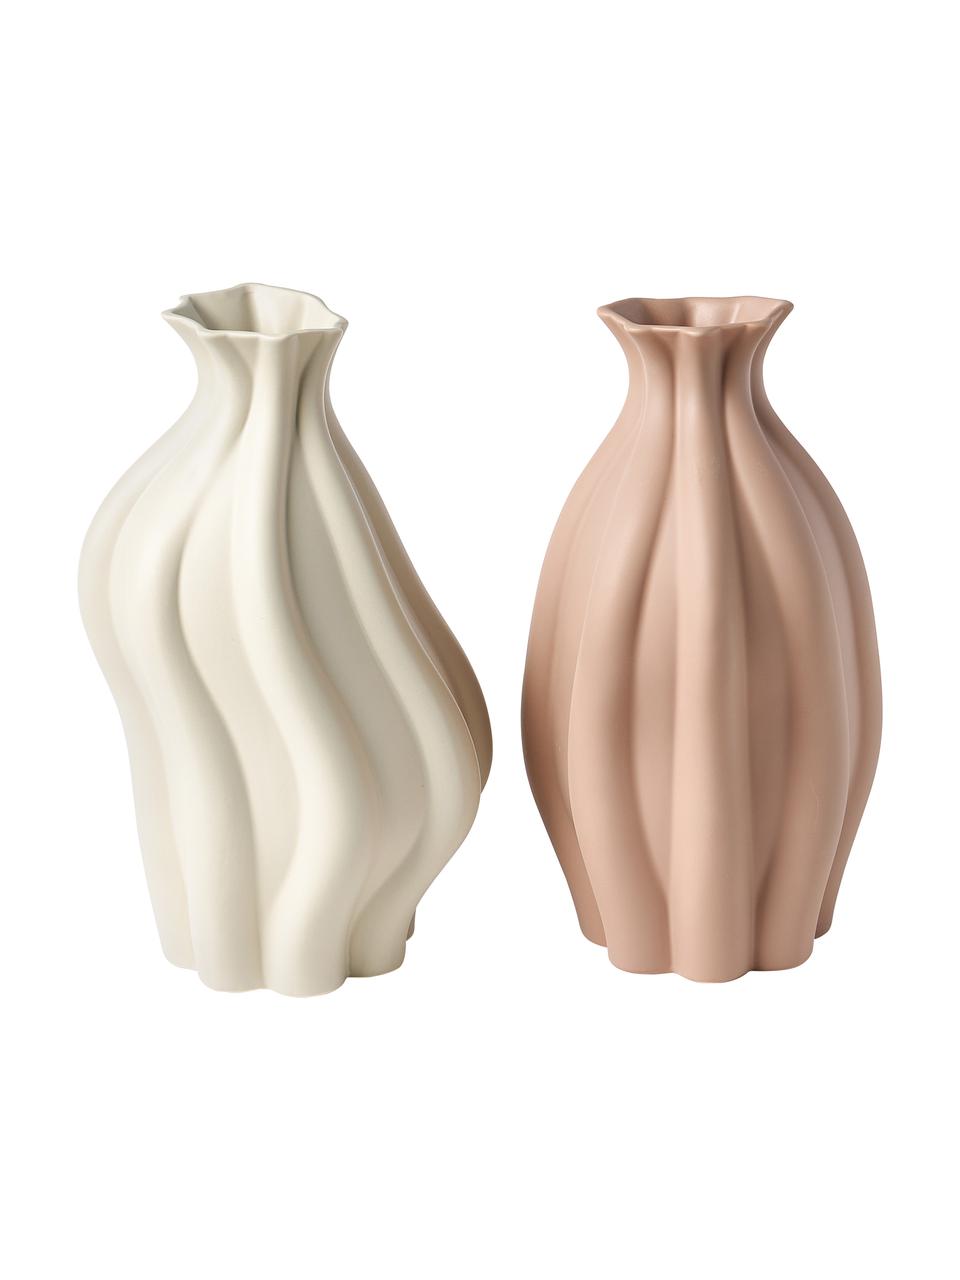 Vaso in ceramica Blom, Ceramica, Beige, A 33 cm